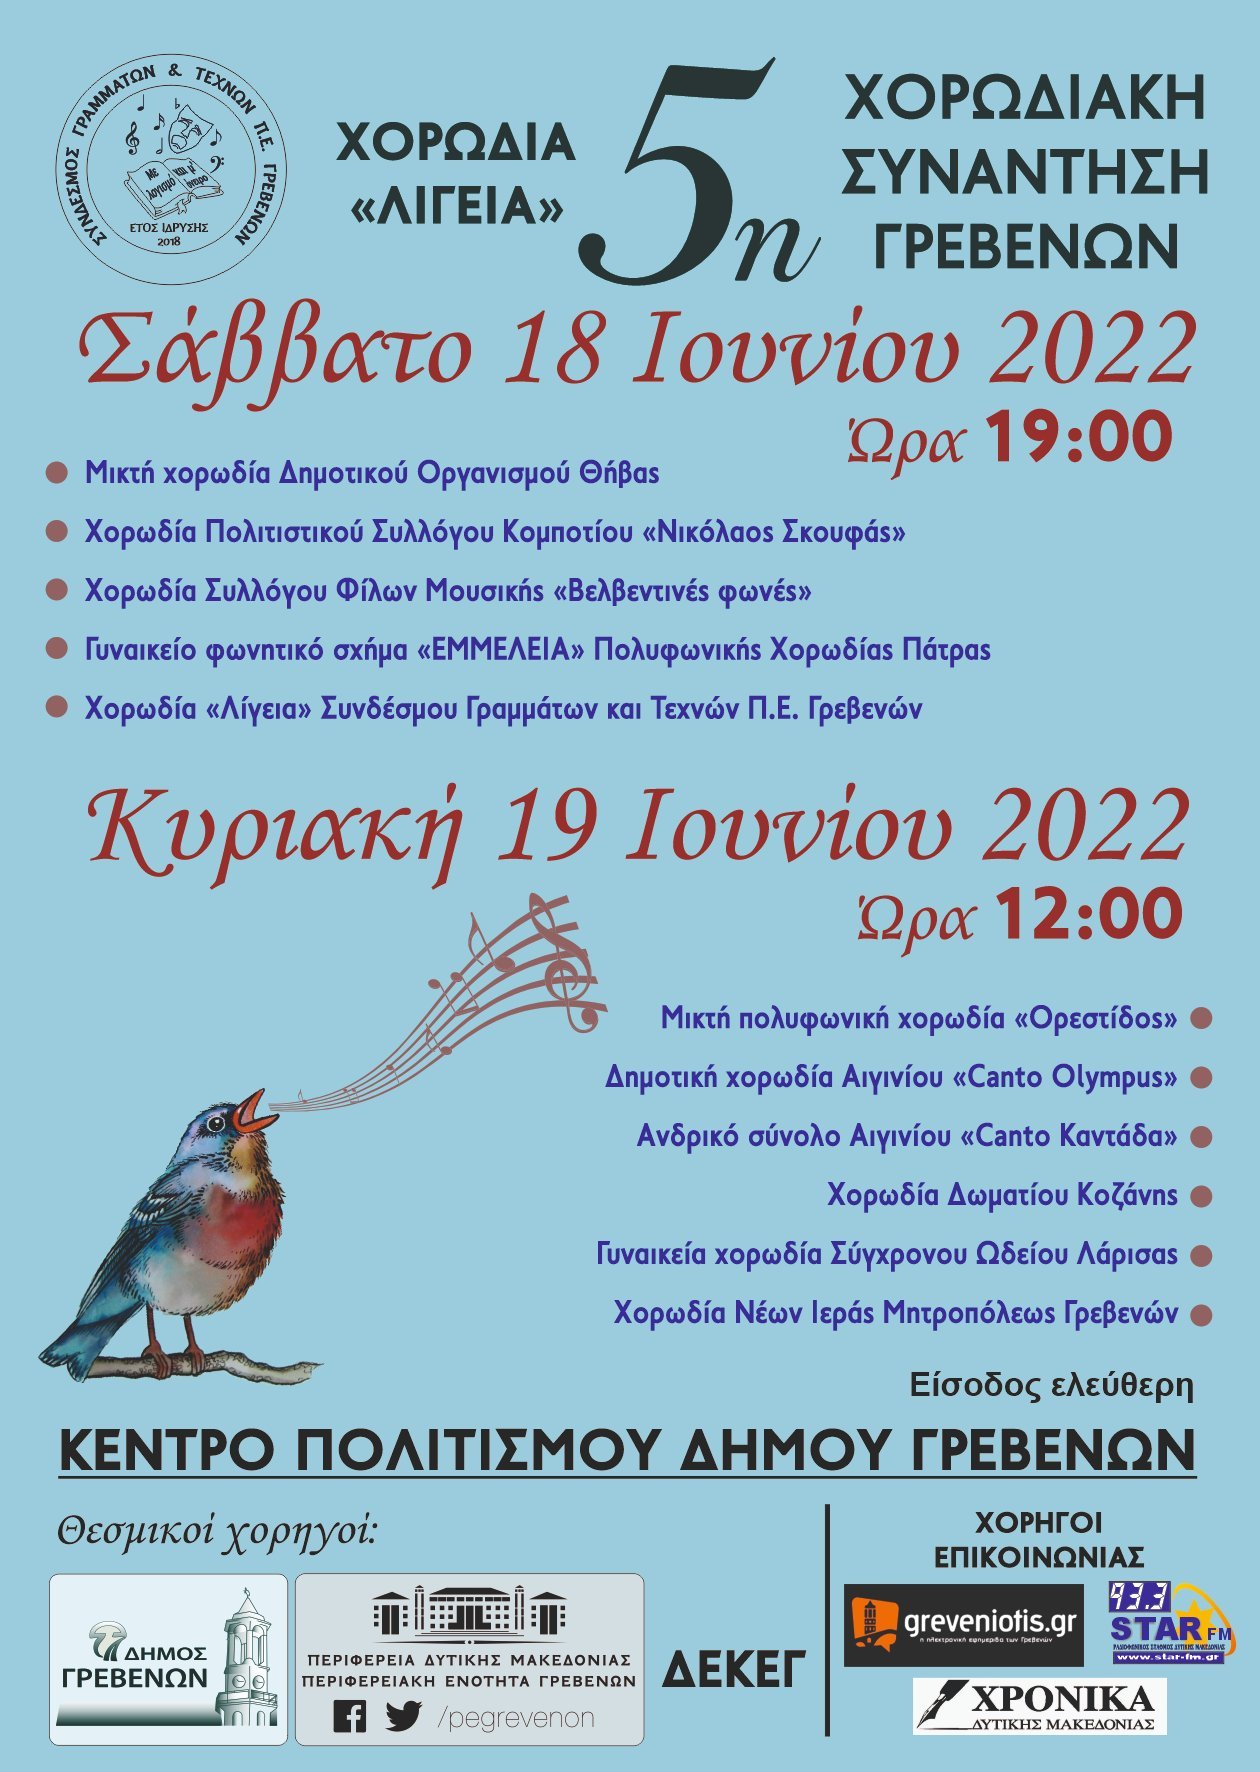 5η Χορωδιακή Συνάντηση Γρεβενών: 18 και 19 Ιουνίου 2022 στο Κέντρο Πολιτισμού  Δήμου Γρεβενών